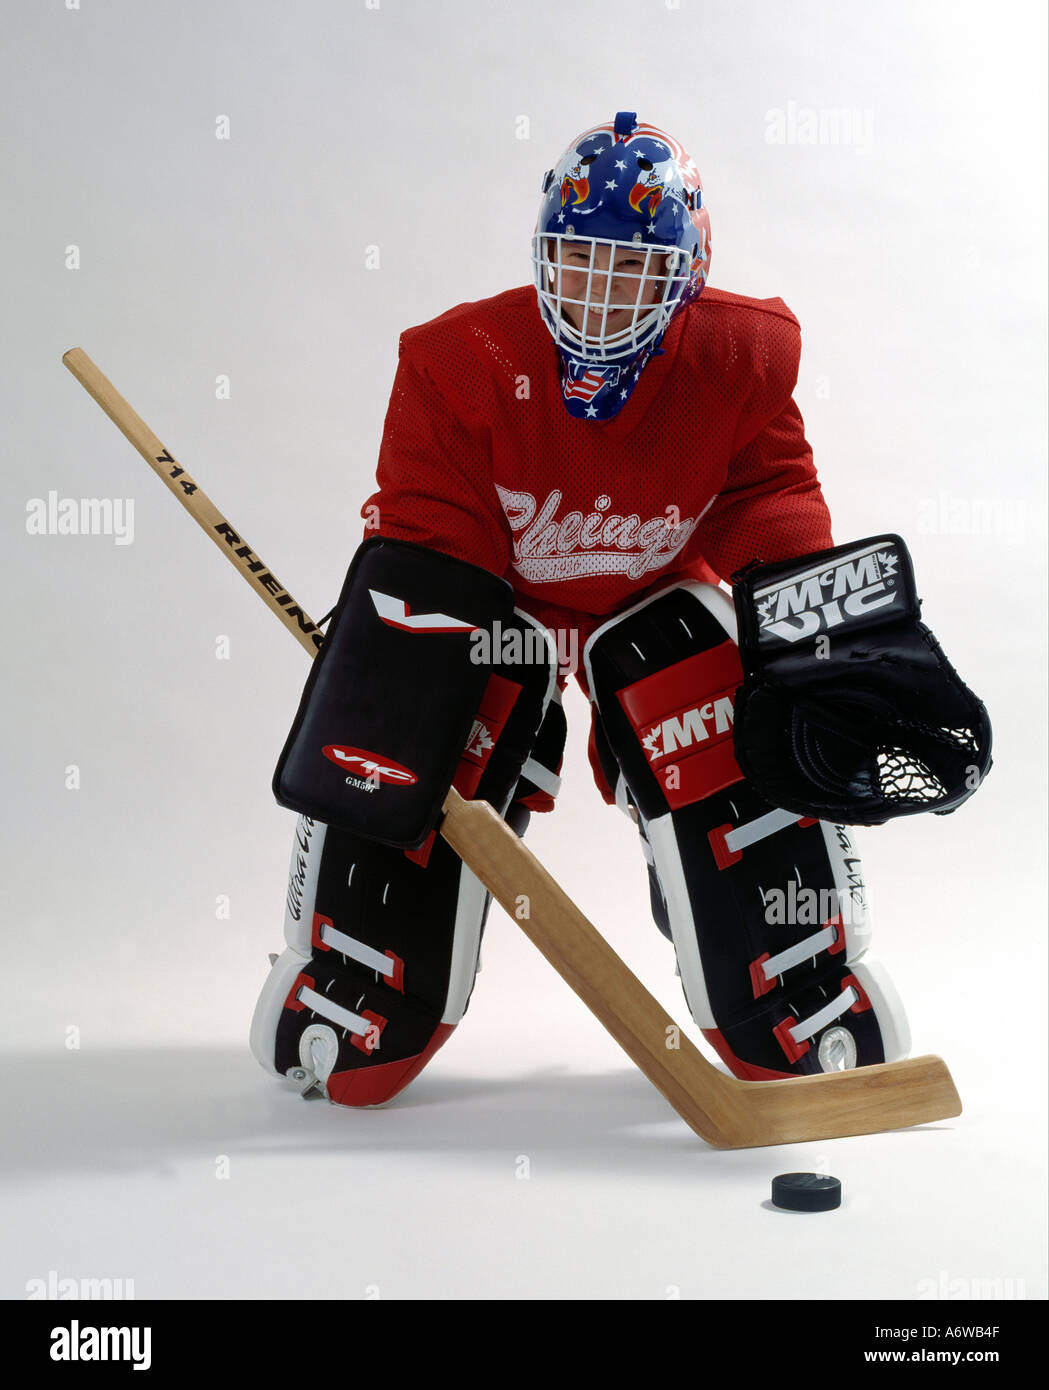 Jungen tragen Eishockey Ausrüstung Stockfotografie - Alamy